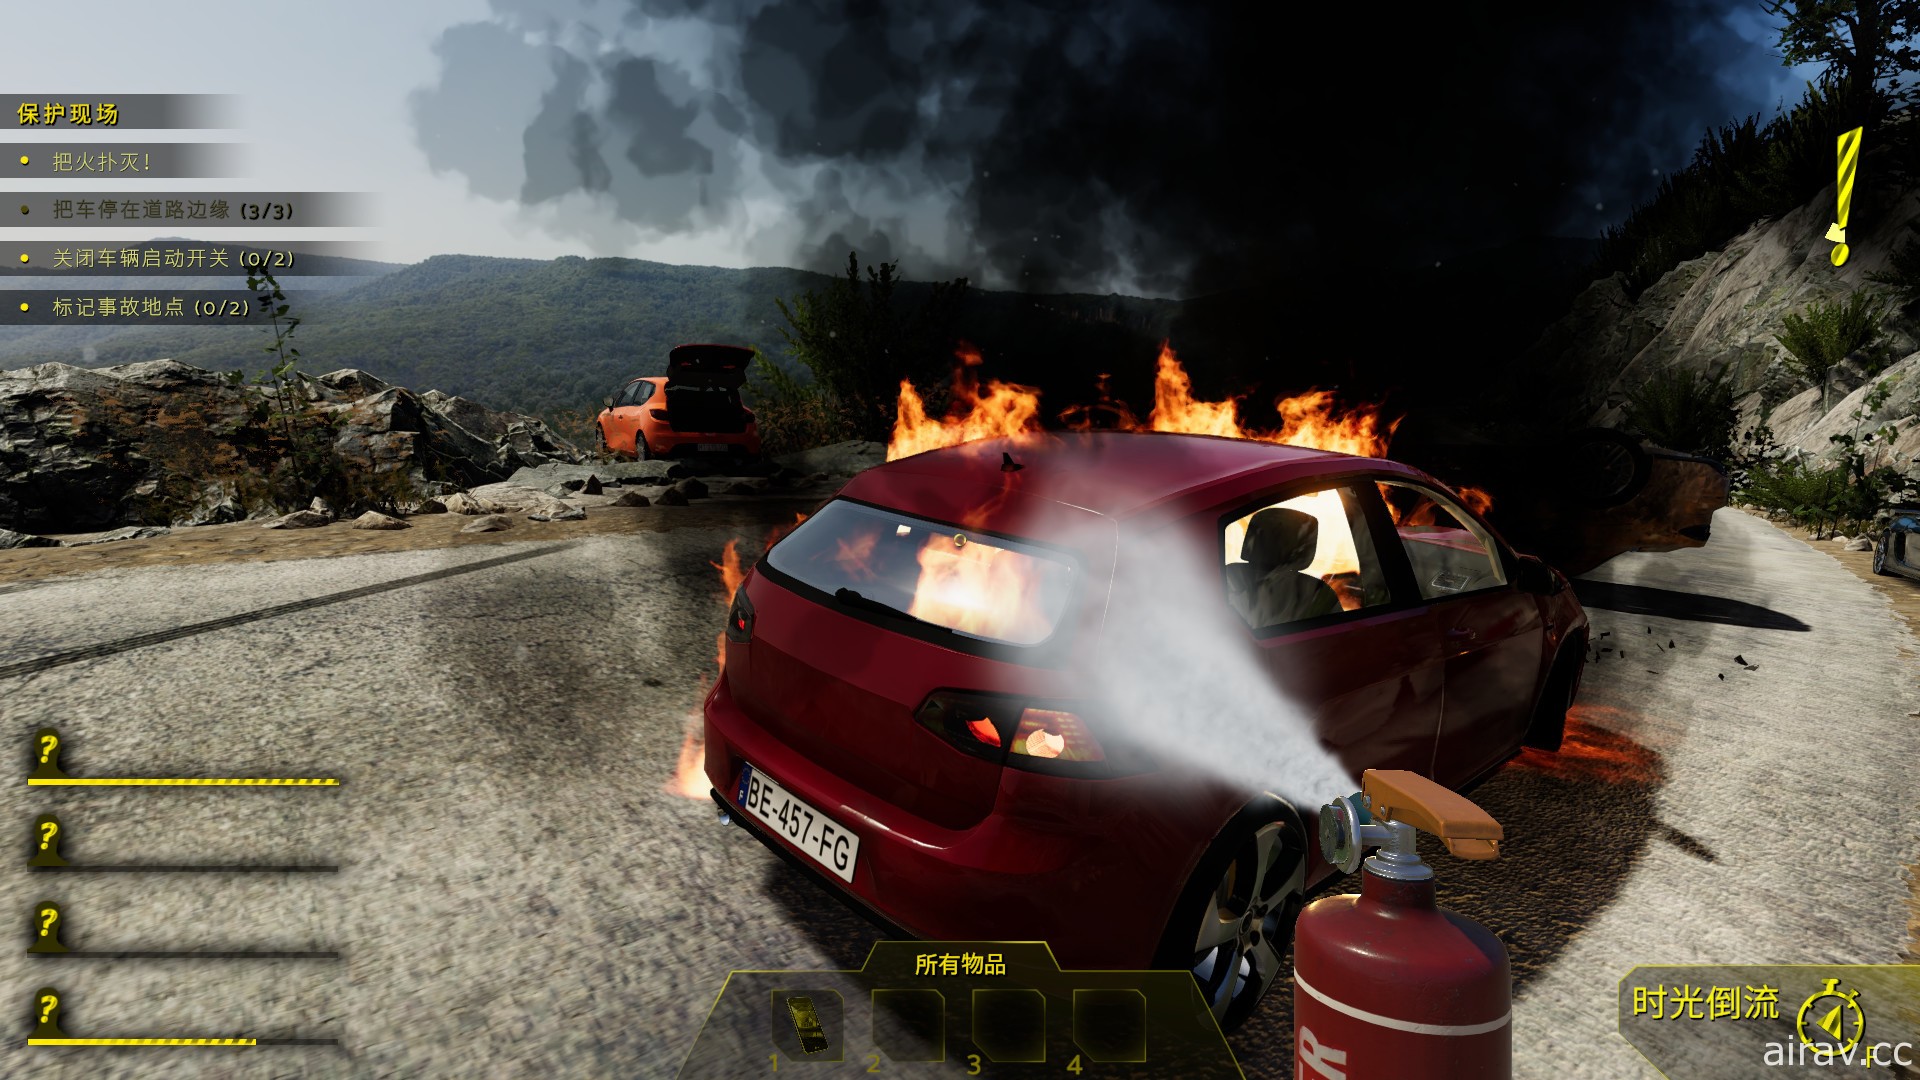 獨立遊戲新作《模擬車禍現場 Accident》展開搶先體驗 救出傷患同時找事故原因